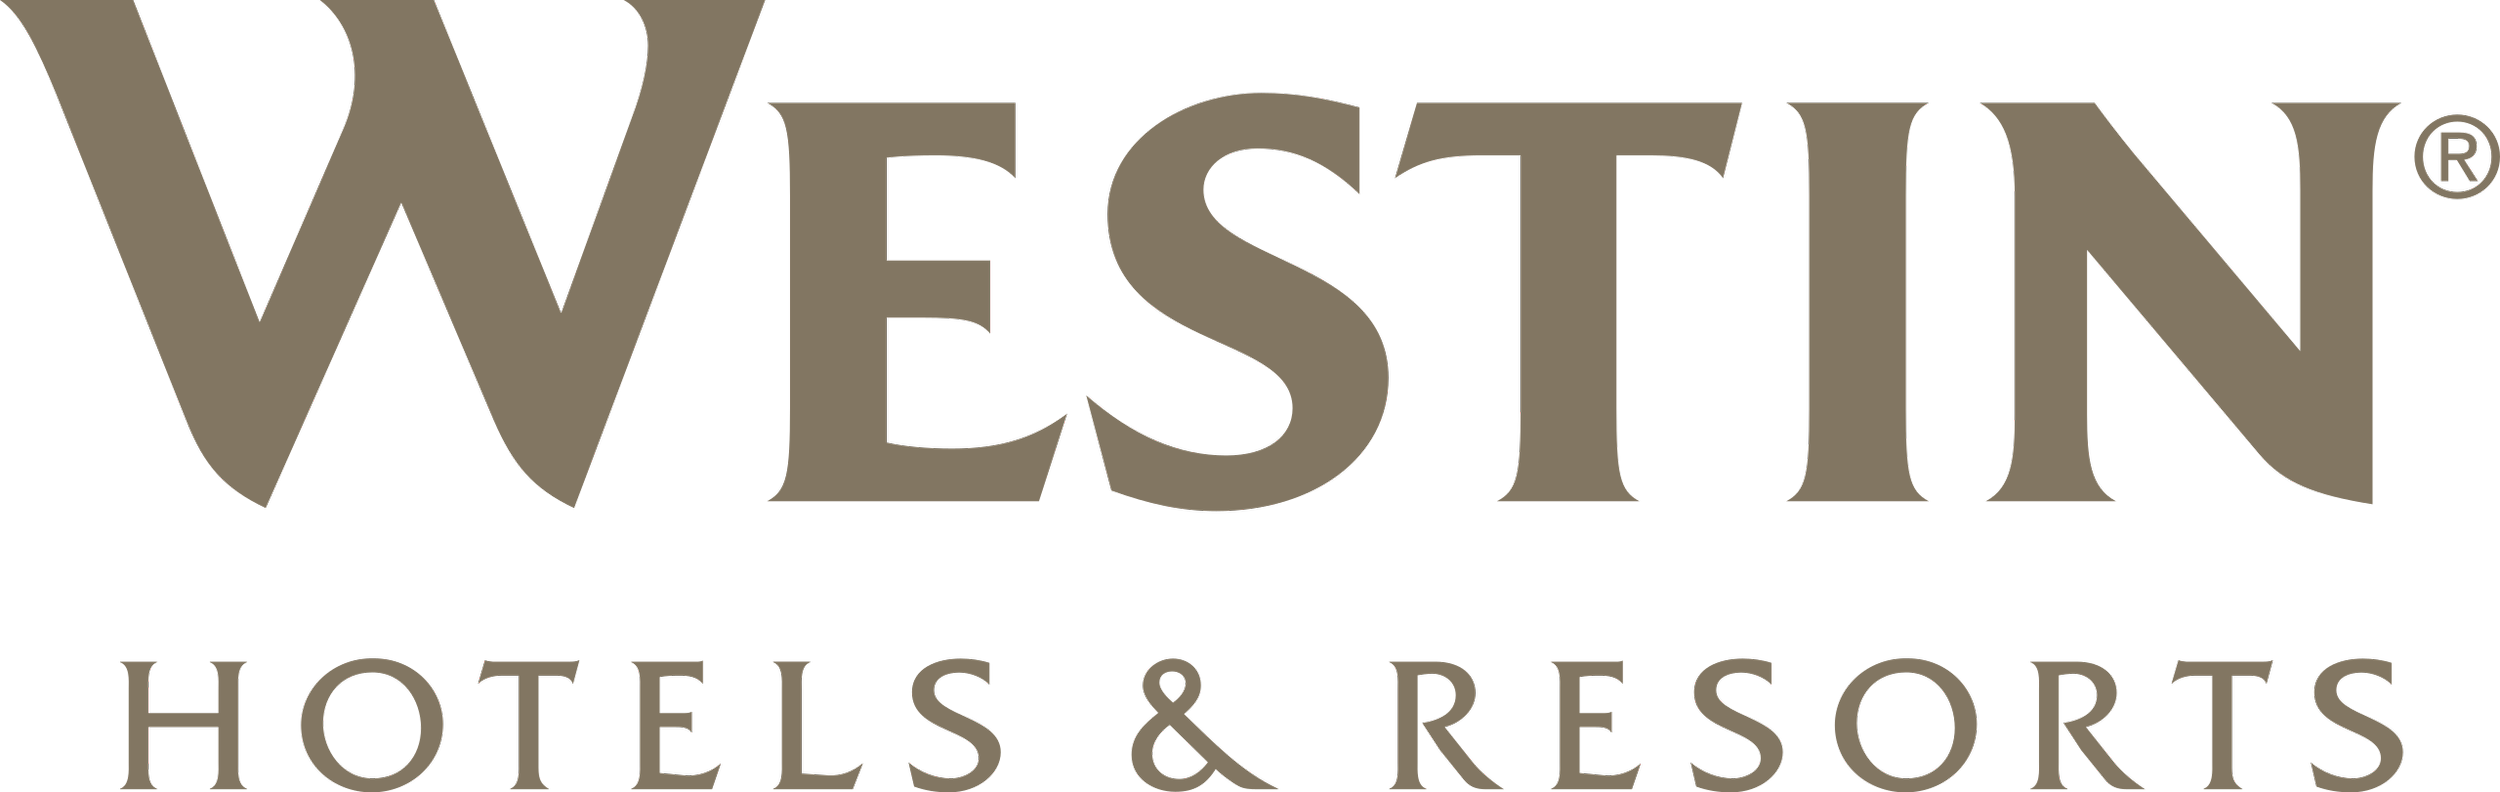 westin logo.png